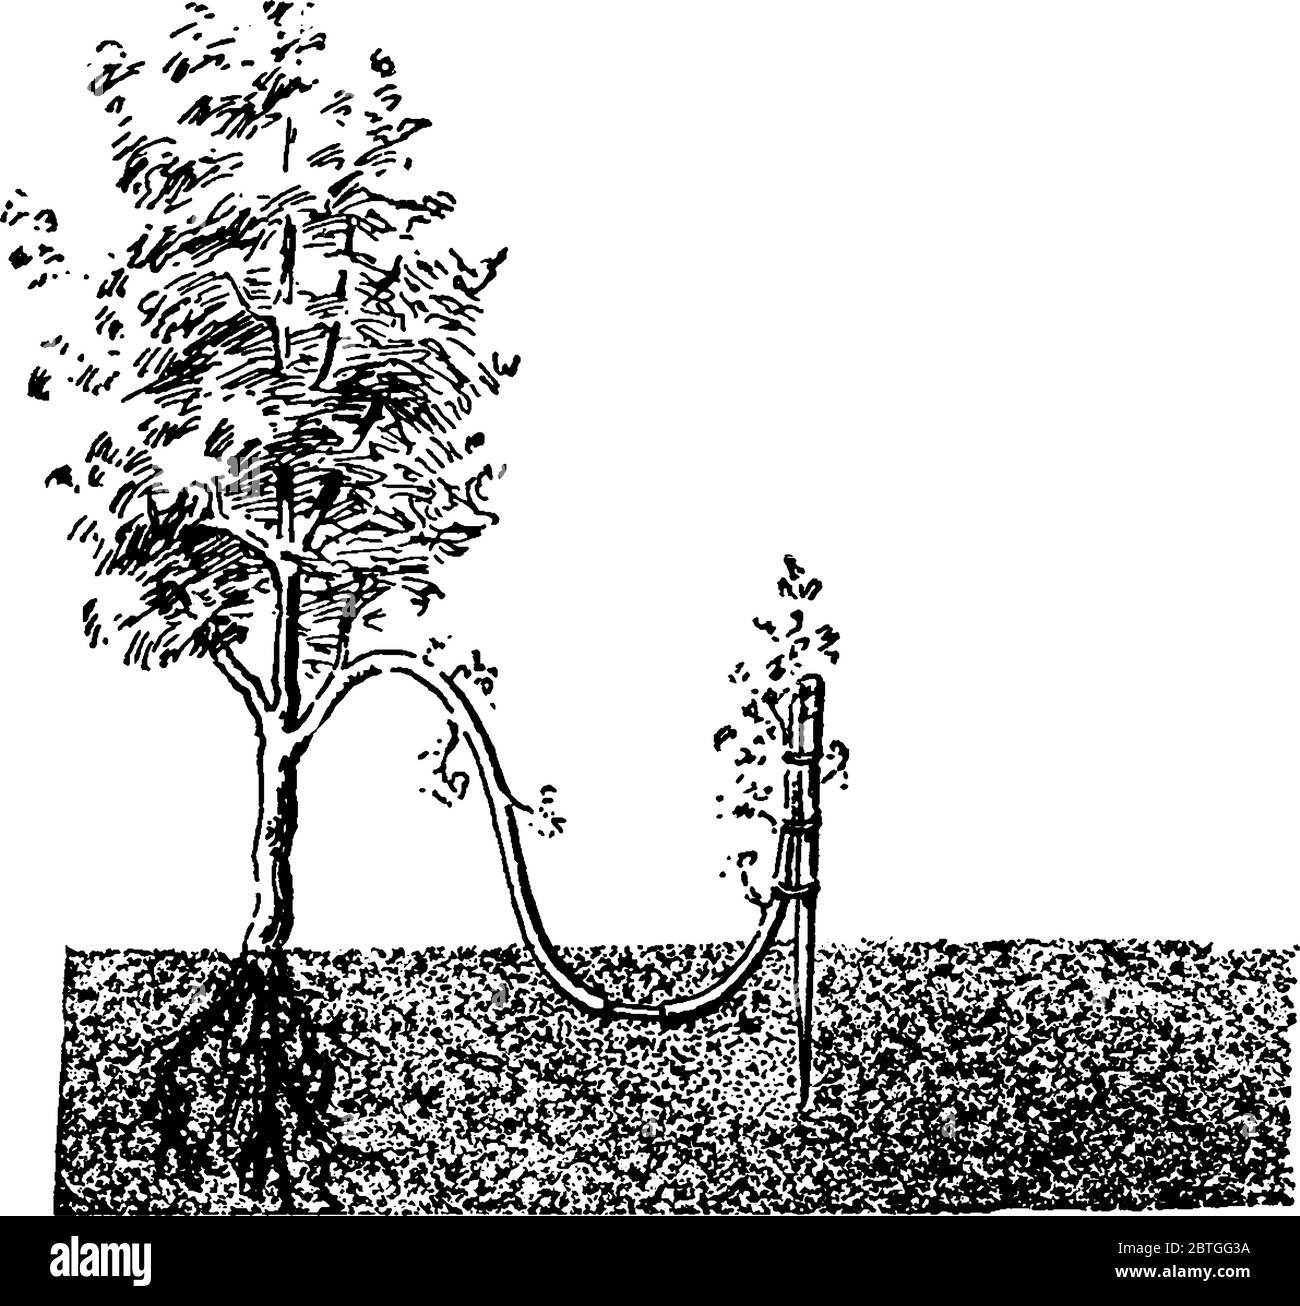 Une seule couche d'une plante entaillée et annelée au fond avec l'écorce enlevée, dessin de ligne vintage ou illustration de gravure. Illustration de Vecteur